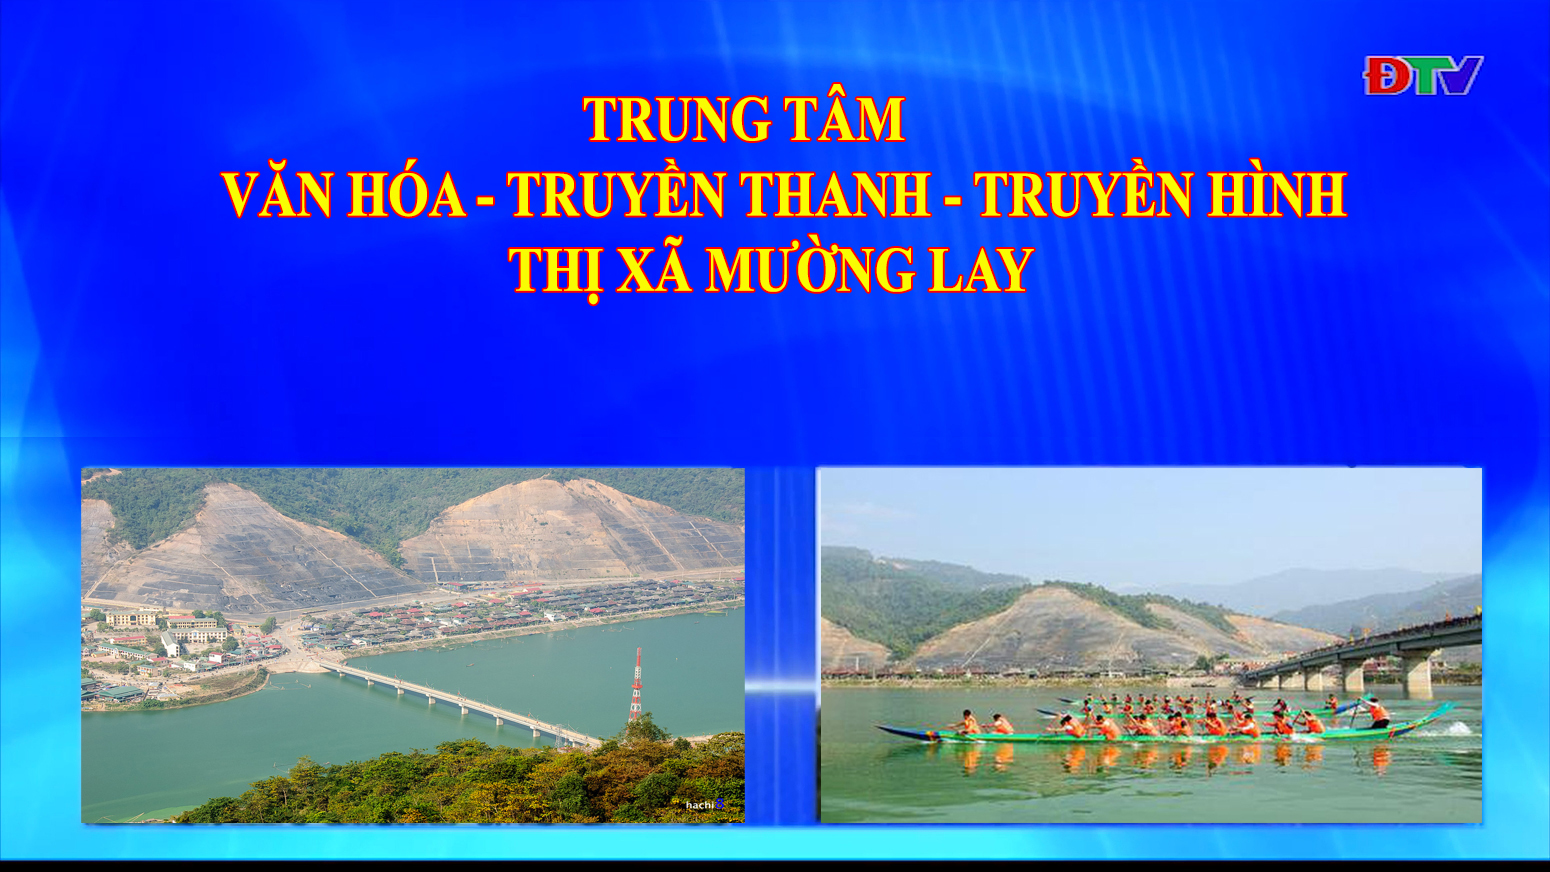 Trung tâm VH-TTTH thị xã Mường Lay (Ngày 12-8-2022)